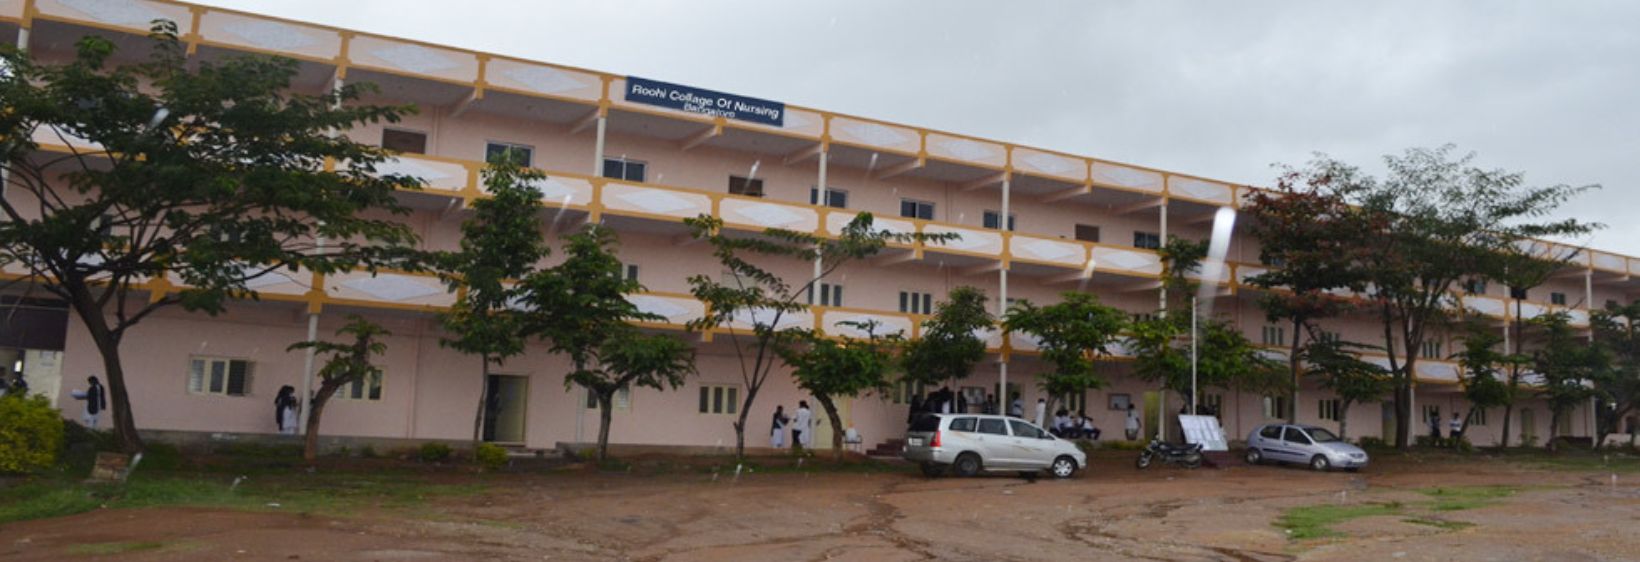 Roohi College of Nursing - Bangalore